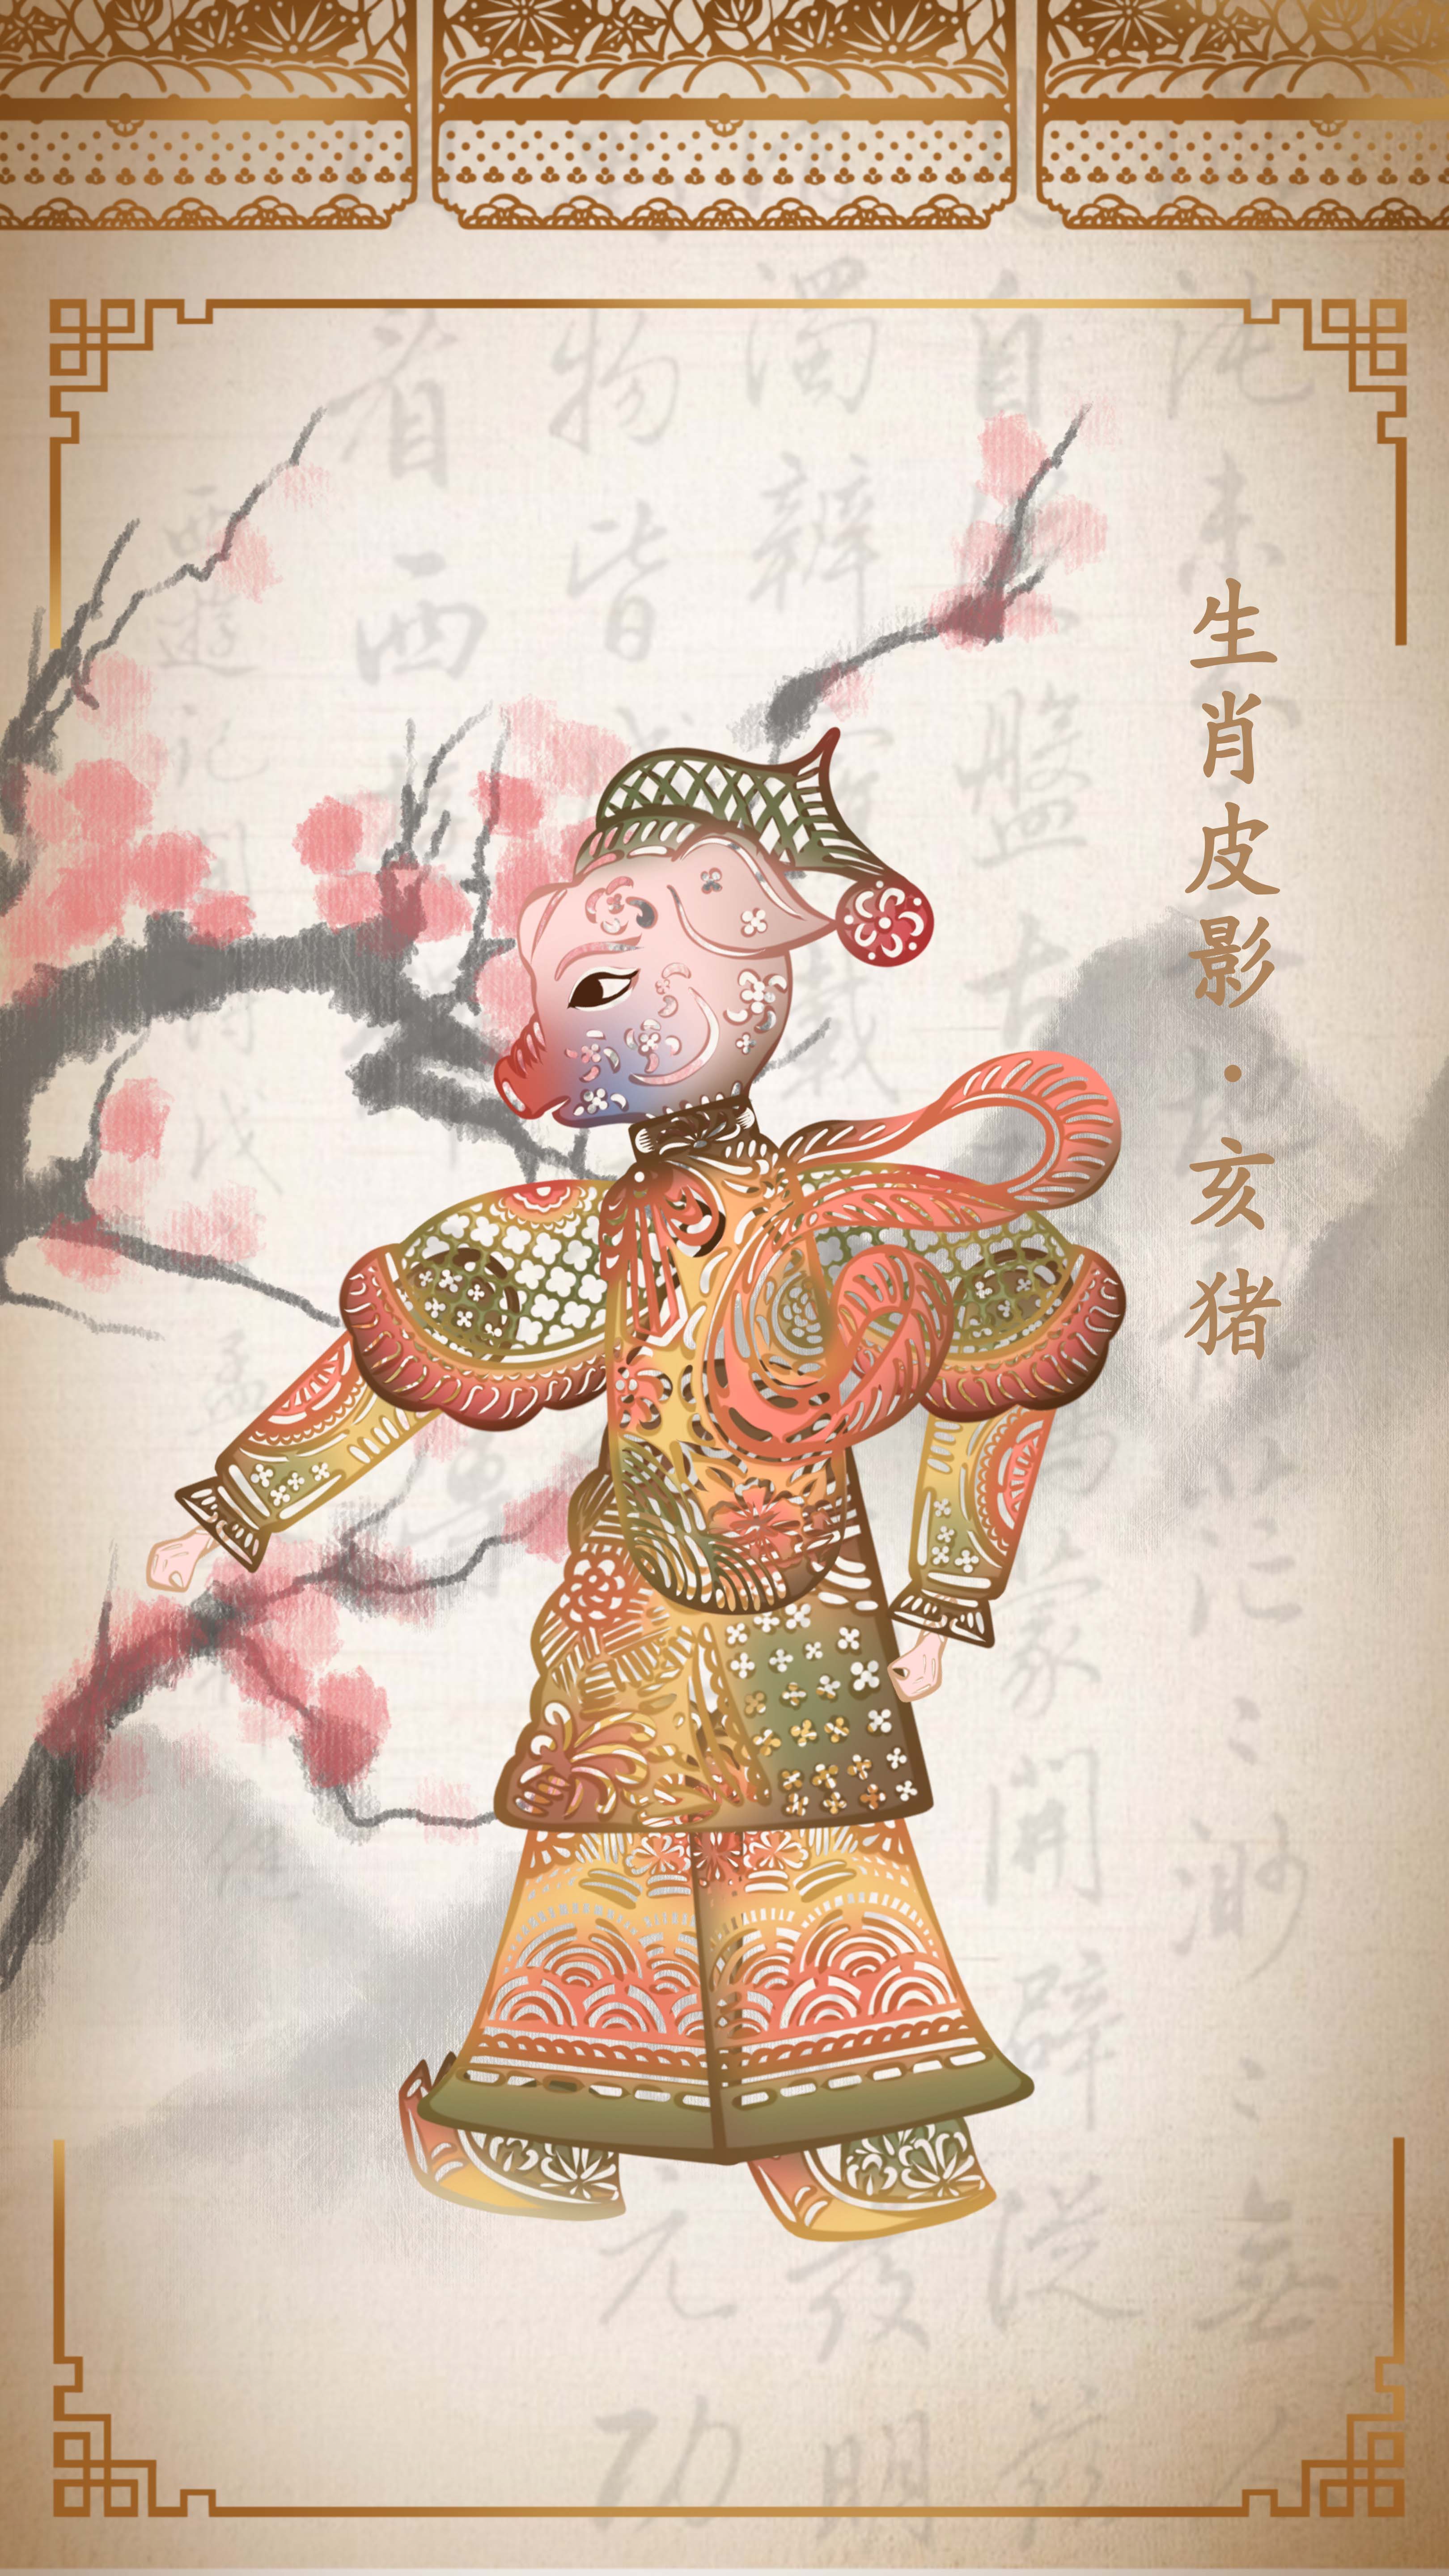 十二生肖皮影数字艺术藏品系列-亥猪